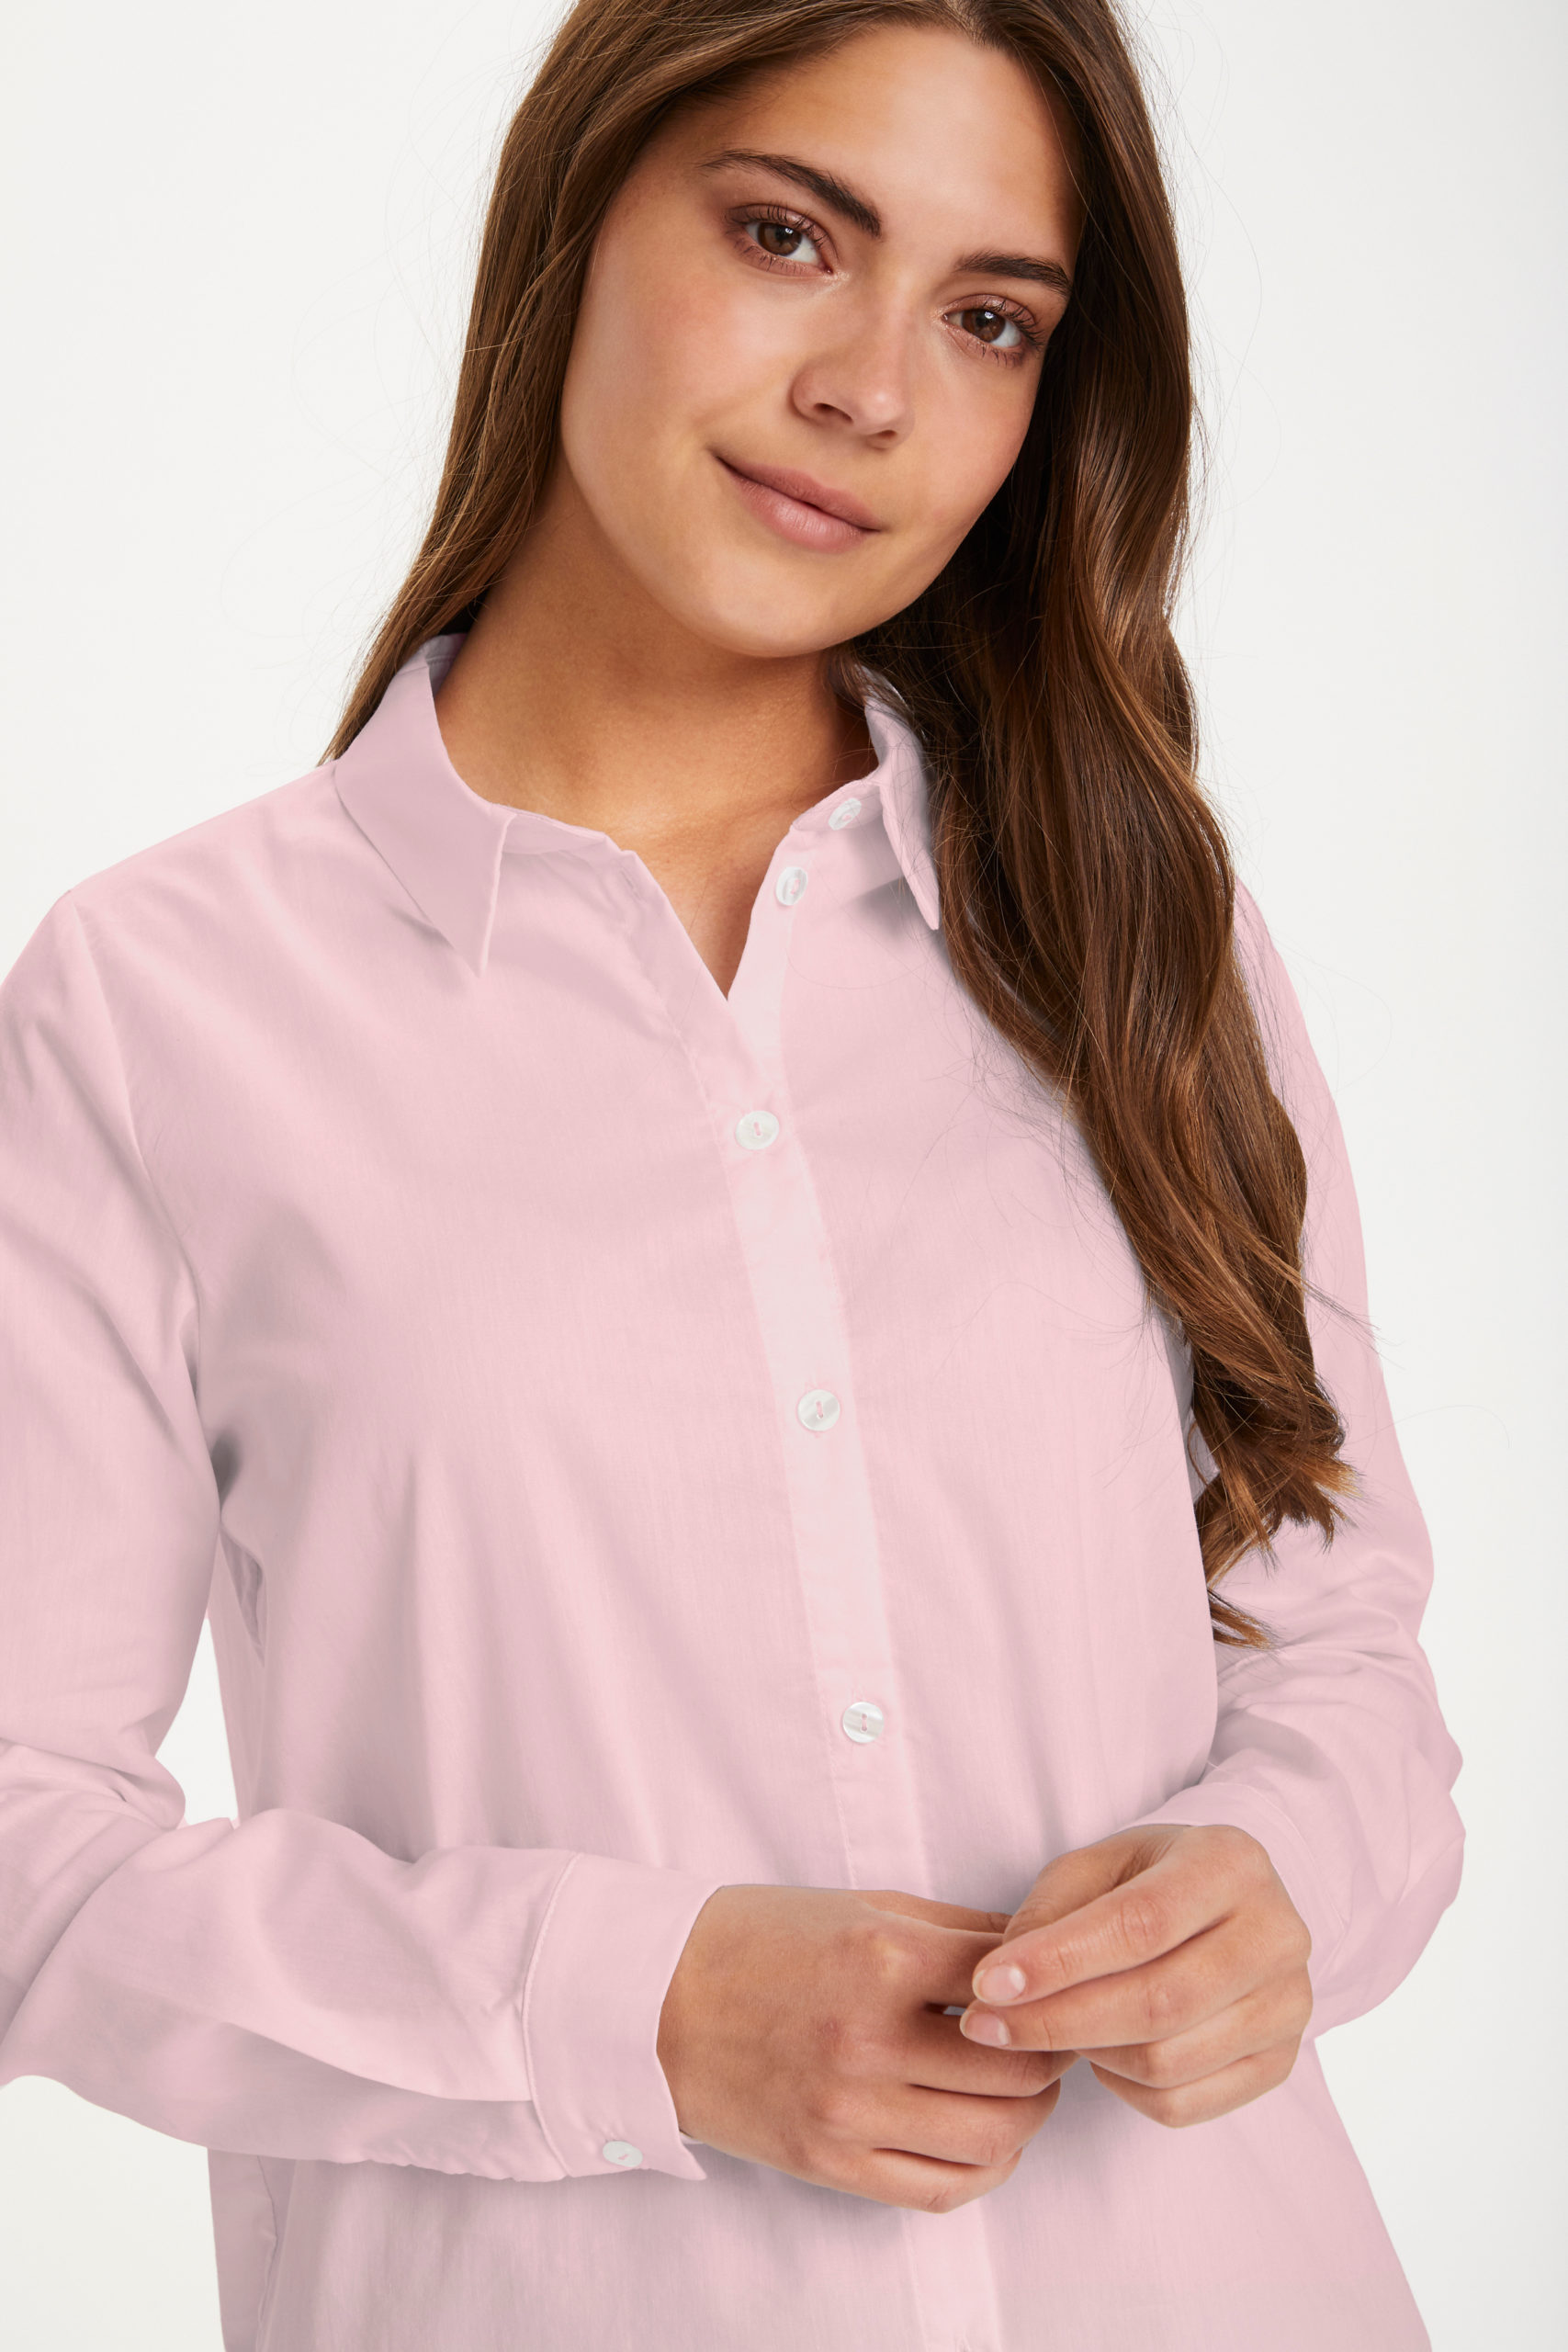 KAscarlet Shirt light pink closeup